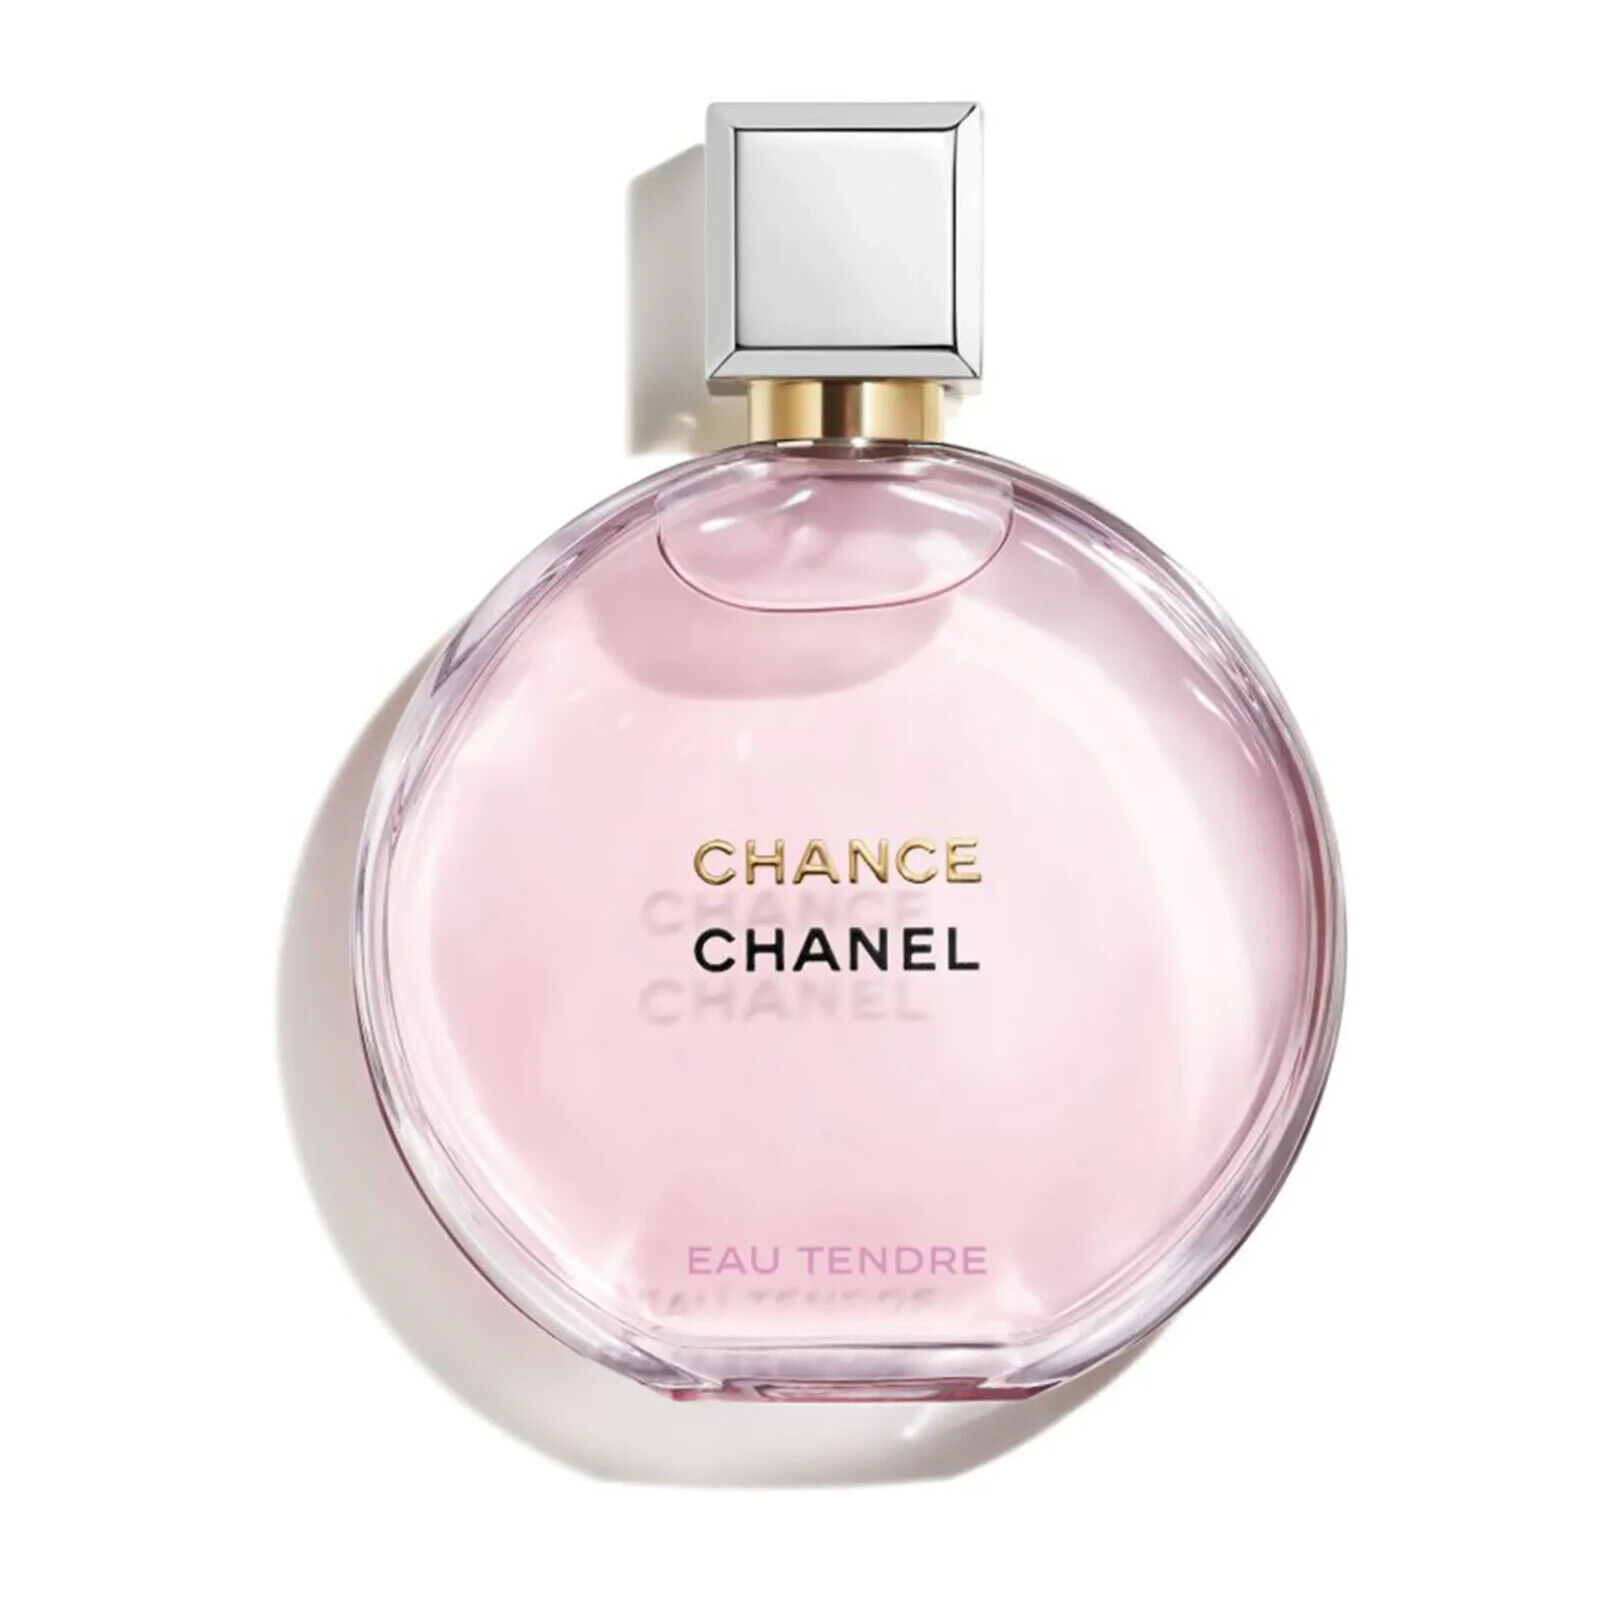 Chanel Chance Eau Tendre Eau De Parfum Spray 3.4 Fl. Oz. Parfum for Women